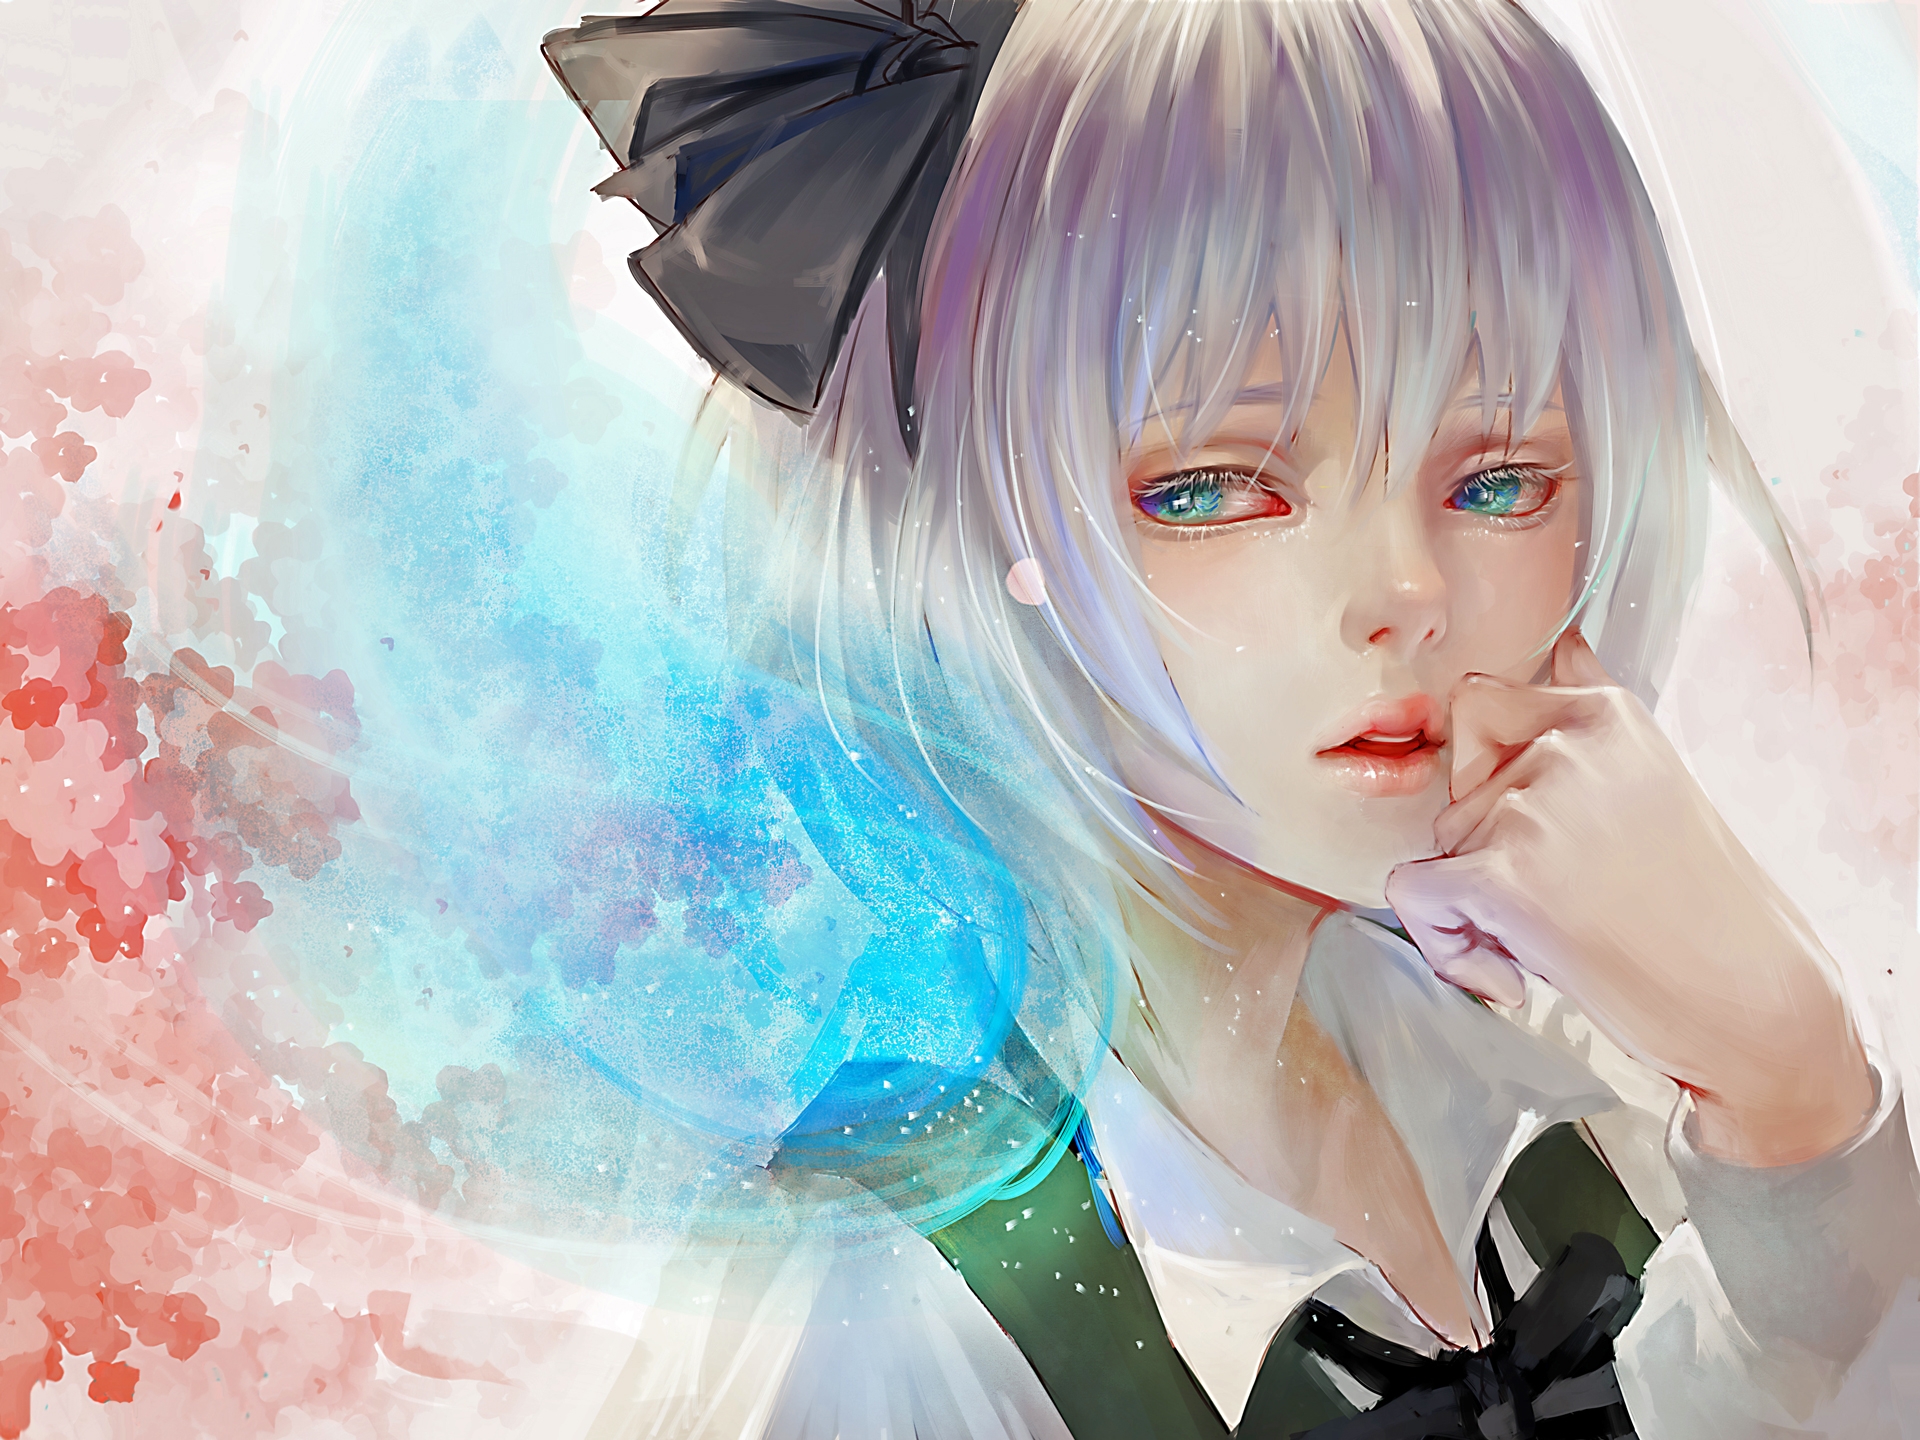 Sad Anime Girl Art - ID: 93357